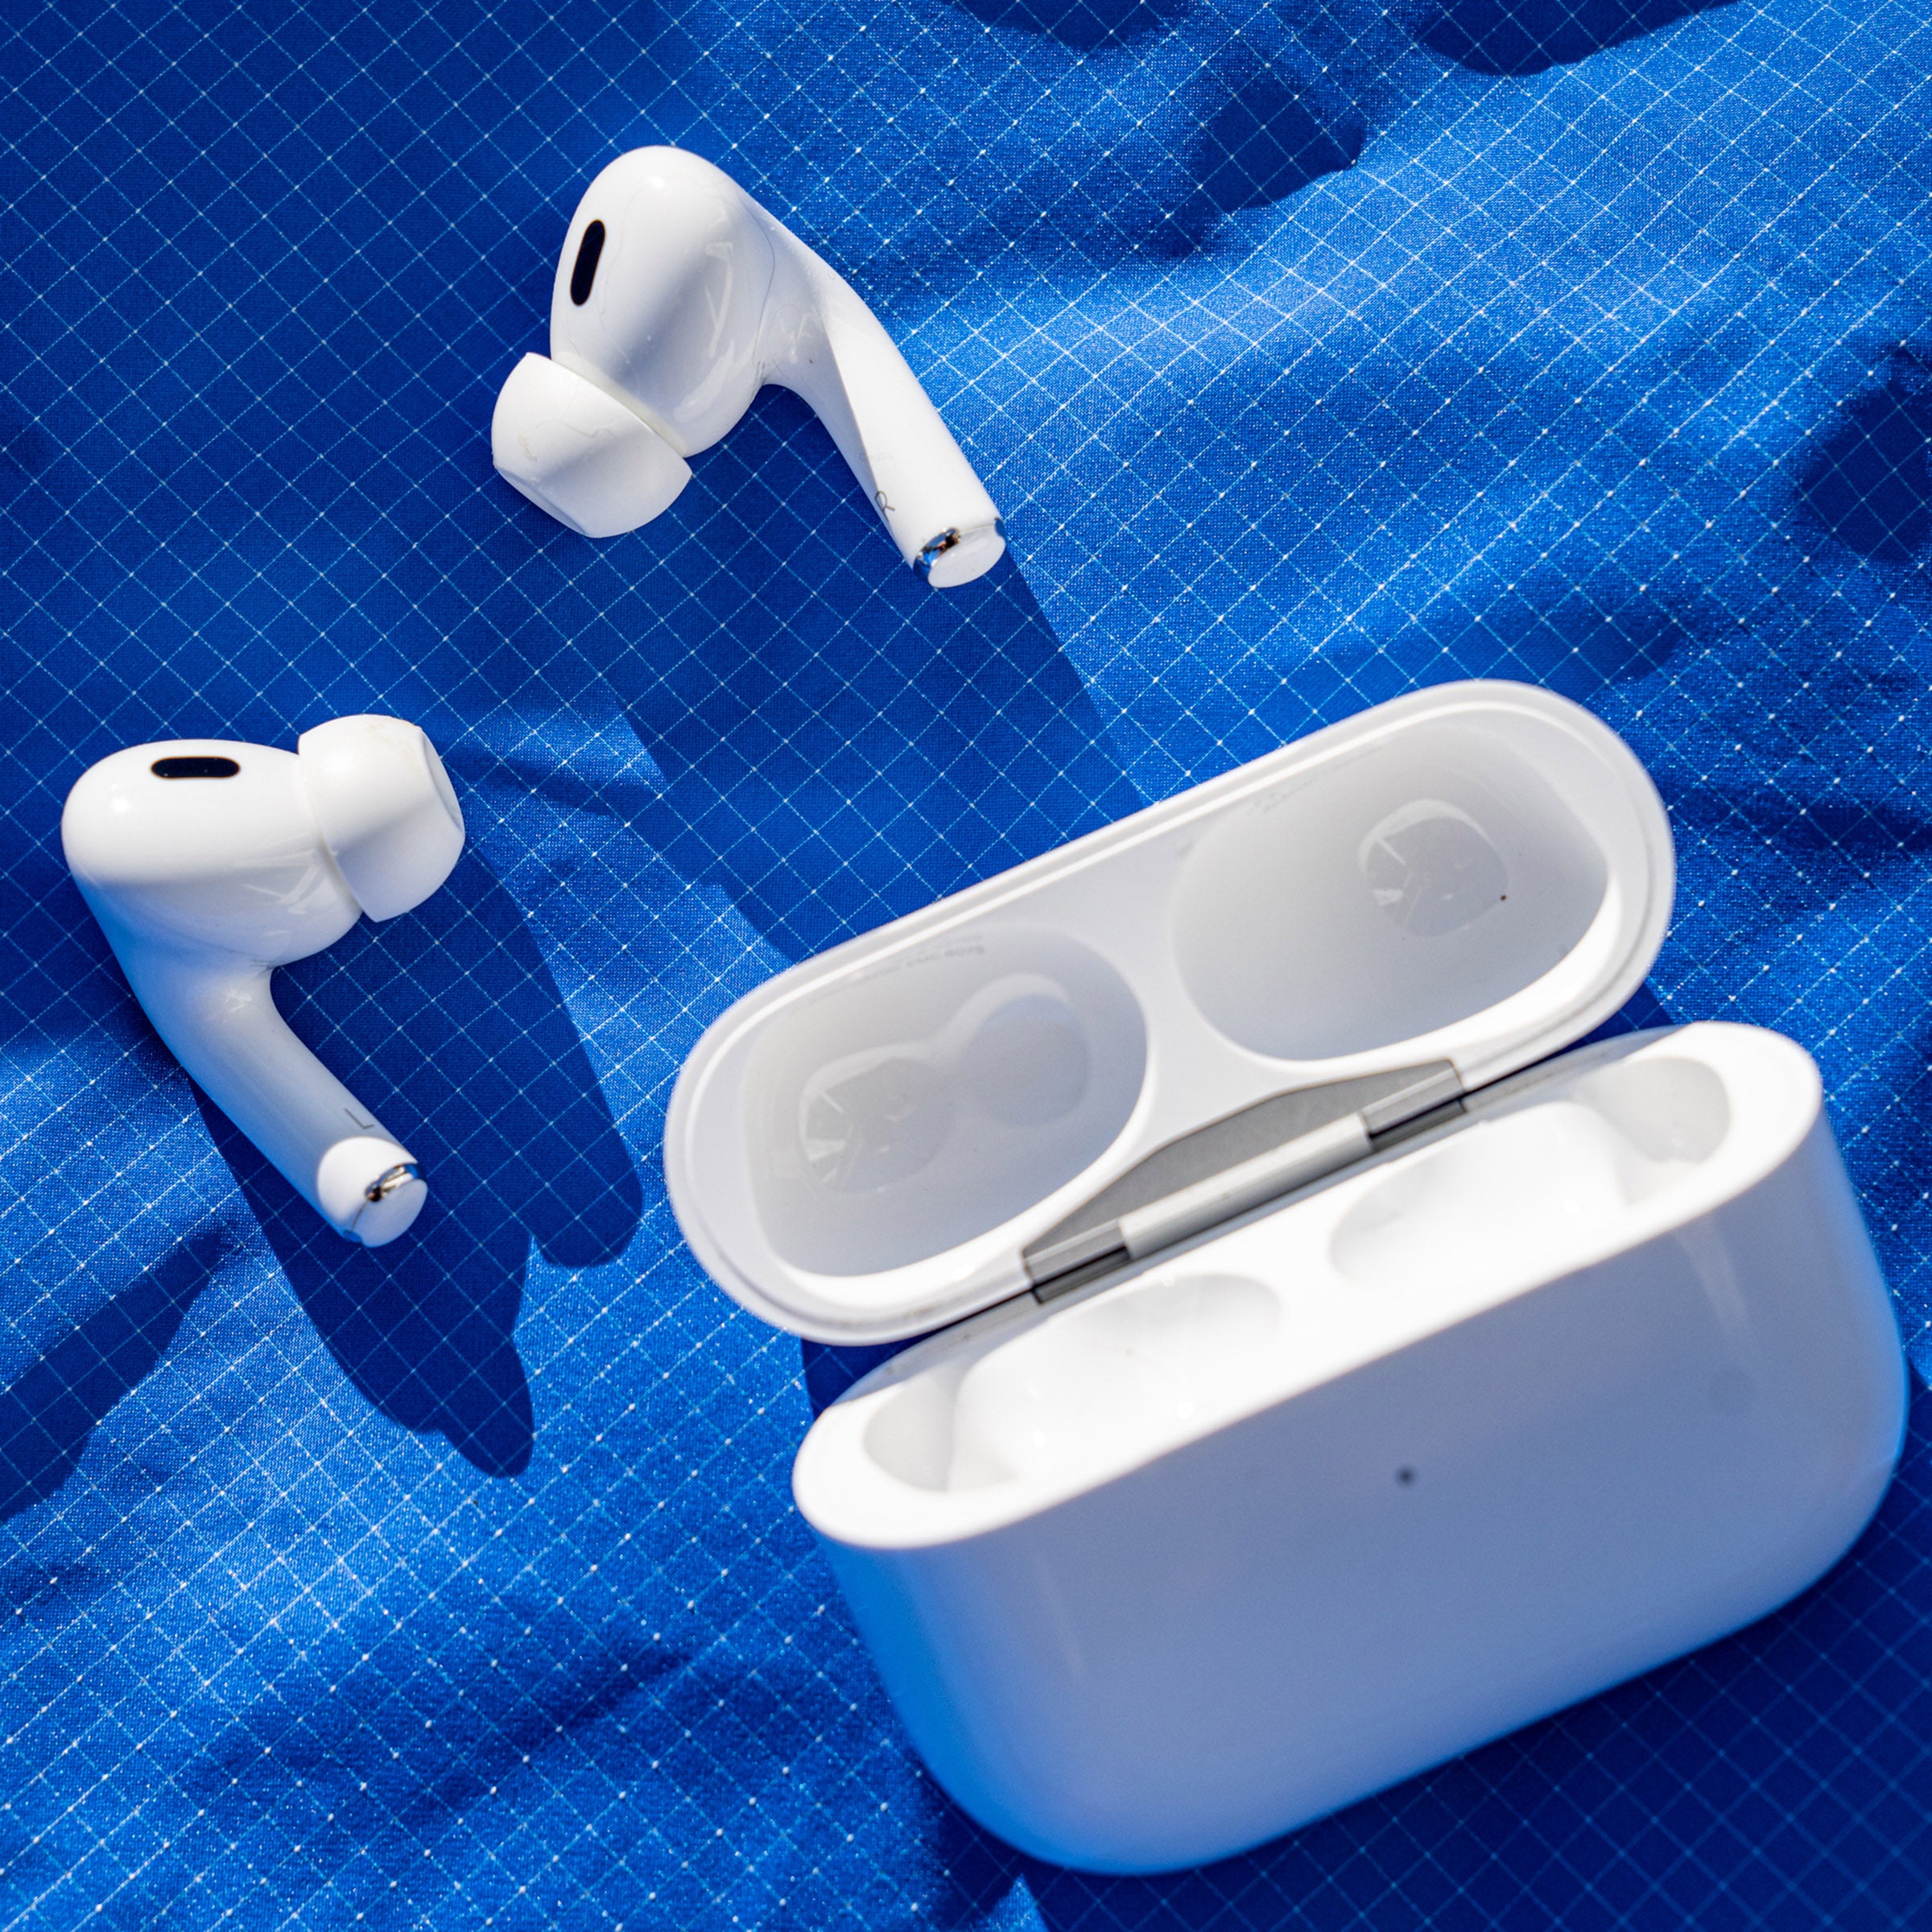 te rechtvaardigen vier keer Gepland Apple AirPods Pro 2 Review: The Only Headphones You Need